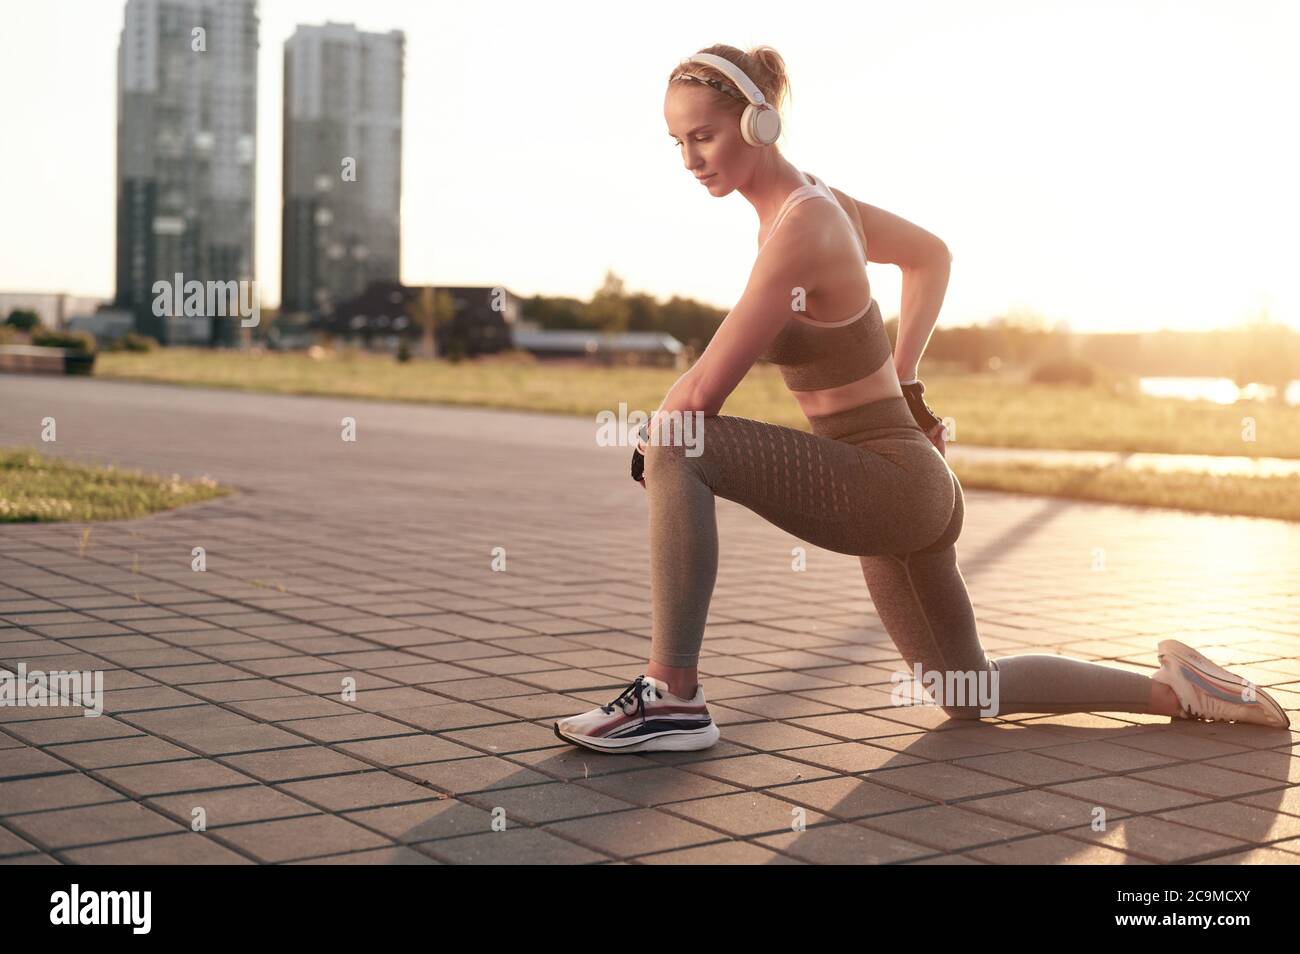 Junge sportliche Frau in Kopfhörer tun Stretching im Park in der Stadt Blick, starke Beine und abs, muskulöse Arme, Fitness trägt Mädchen Stockfoto